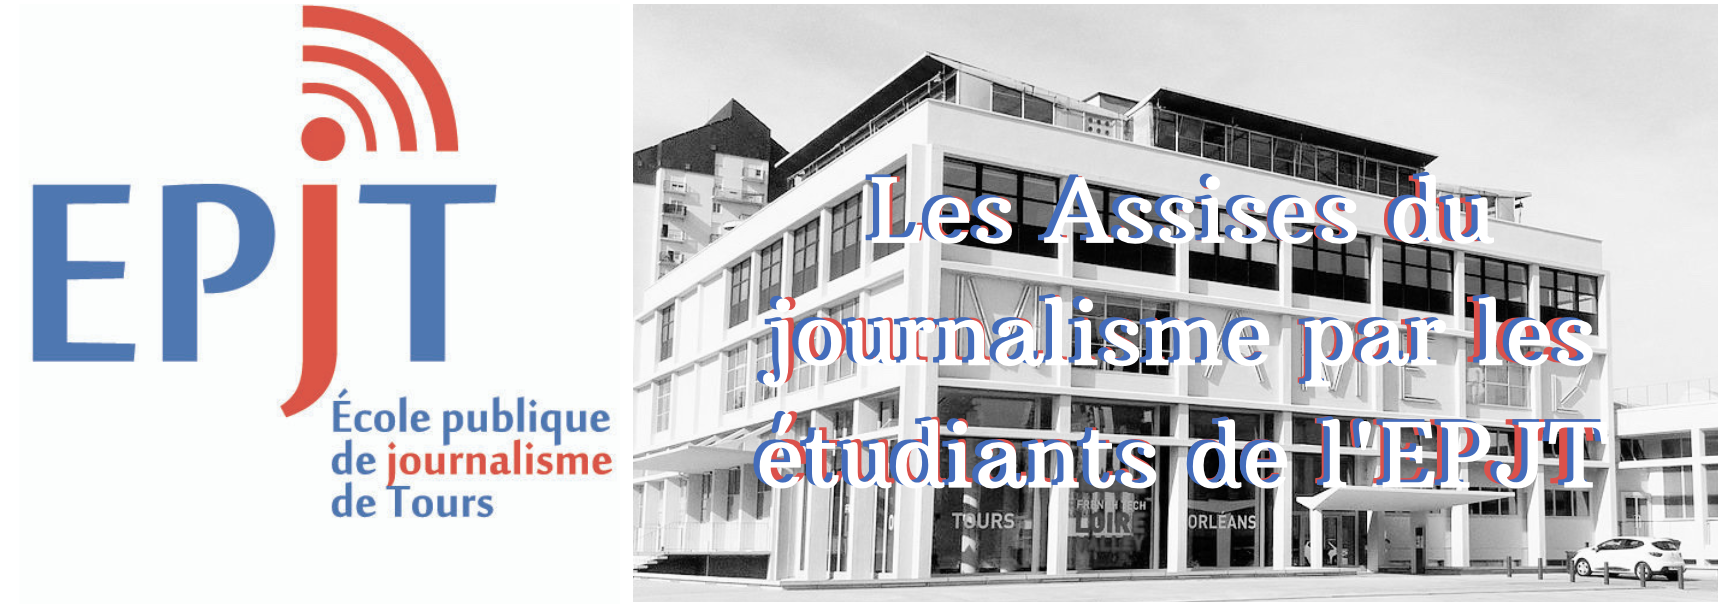 Assises.journalisme.epjt.fr